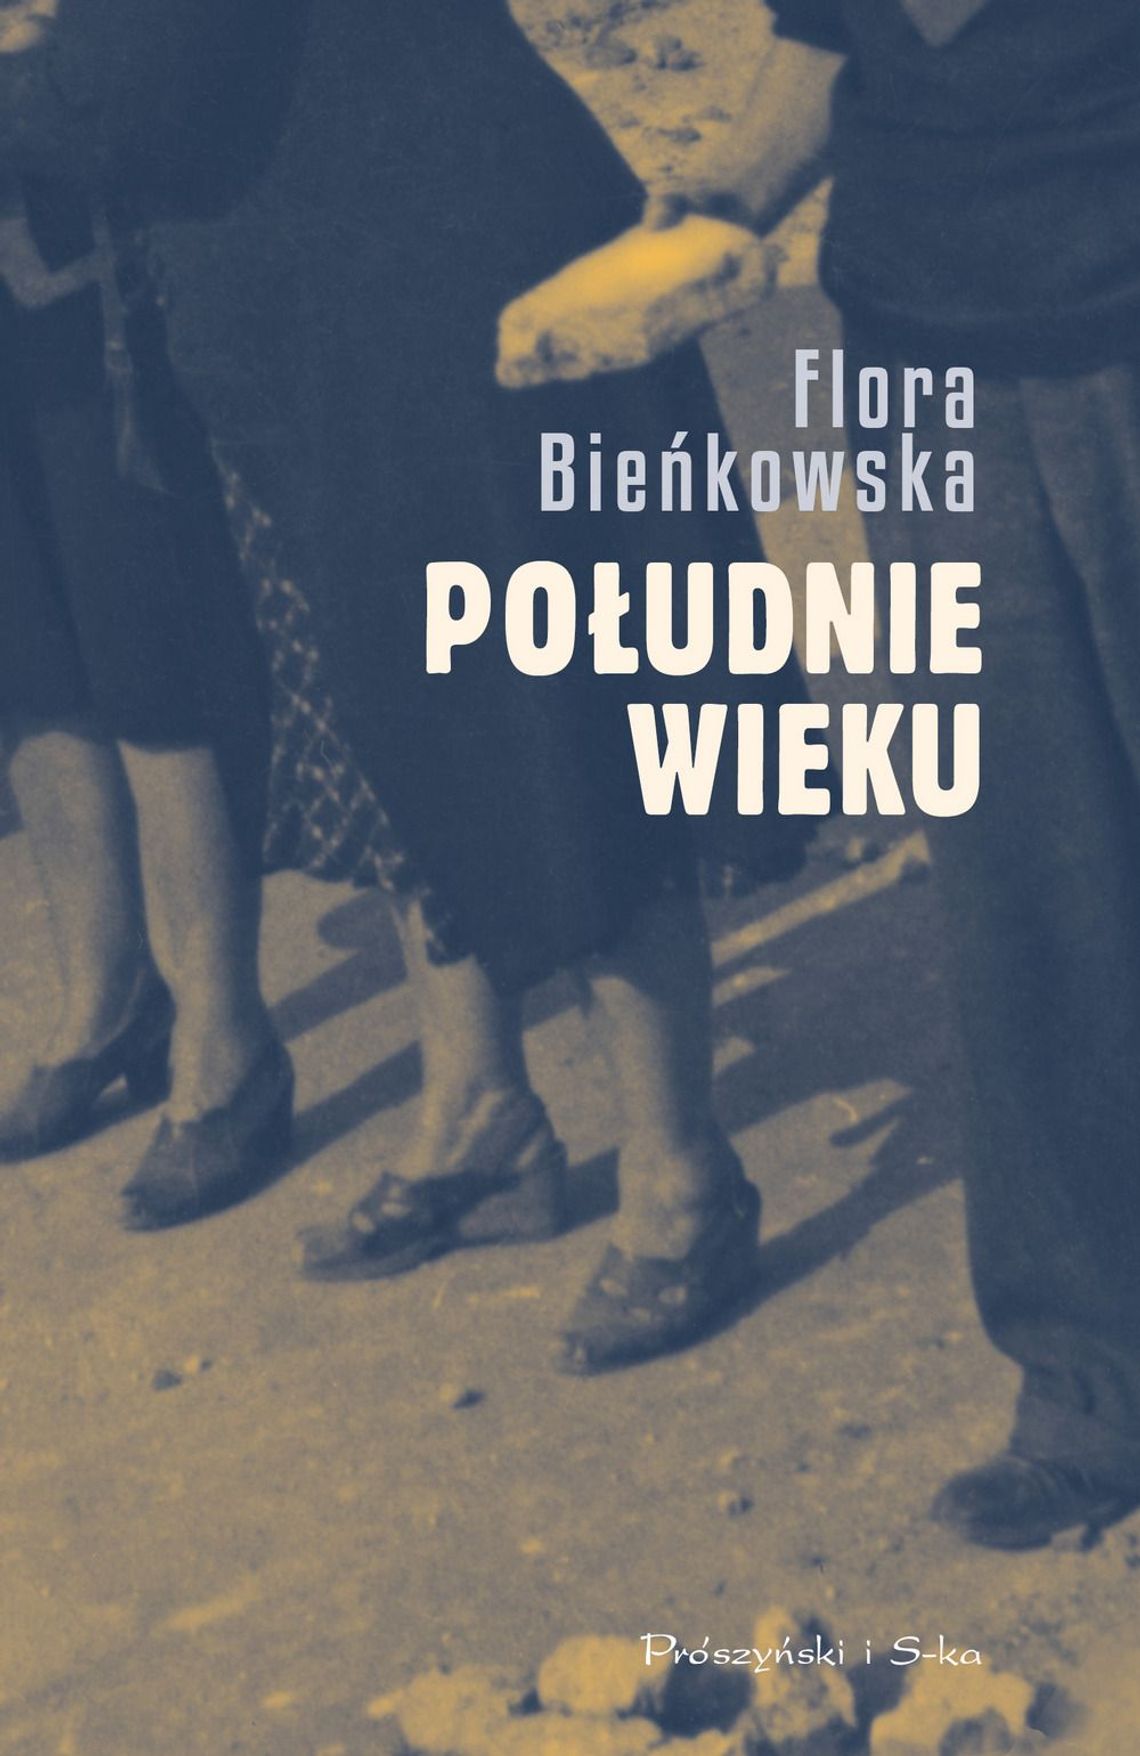 Flora Bieńkowska "Południe wieku" ; wyd. Prószyński i S-ka